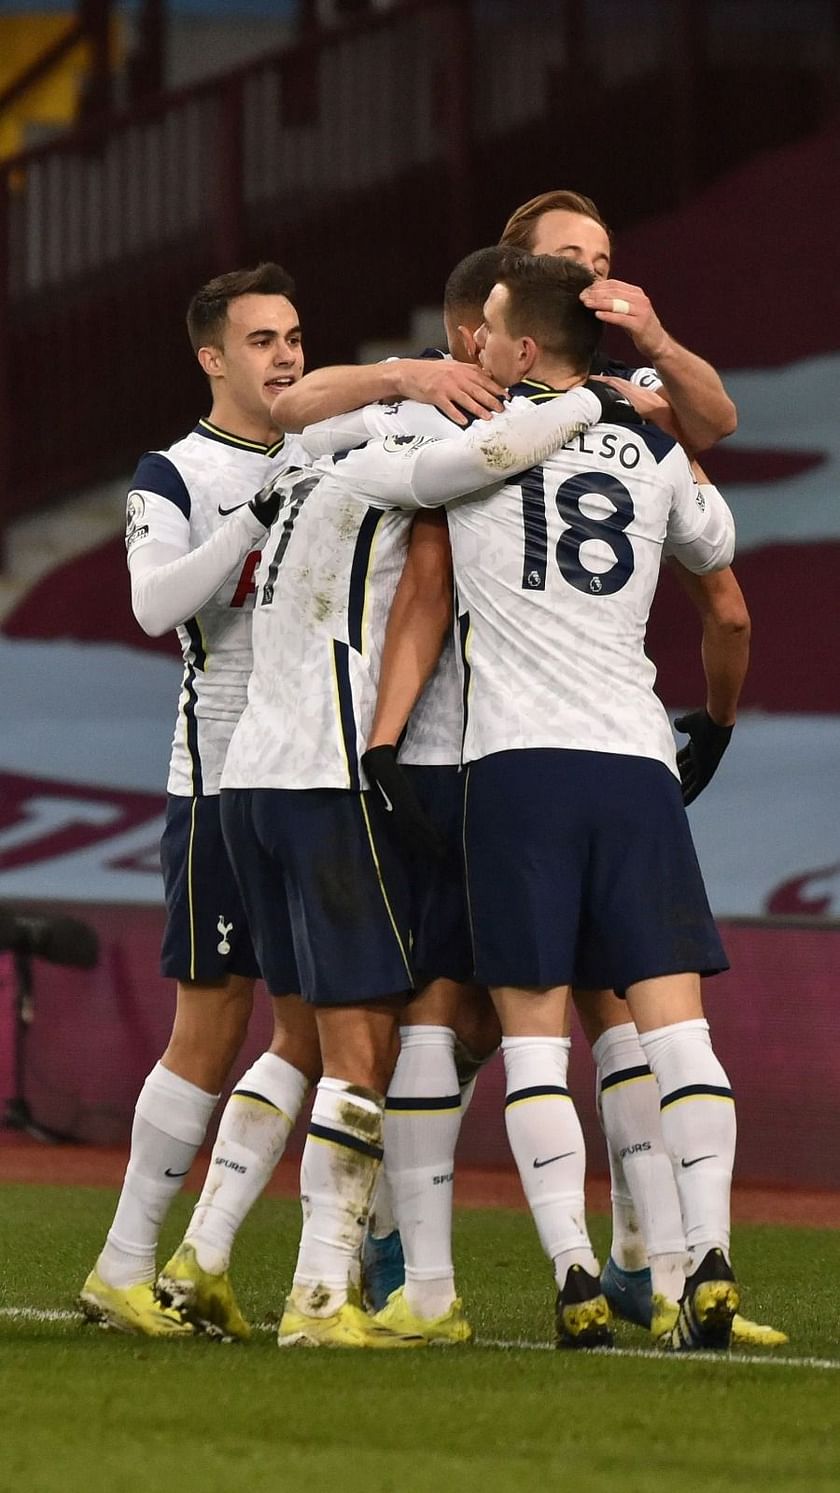 Tottenham 0-2 Aston Villa: Premier League – as it happened, Premier League